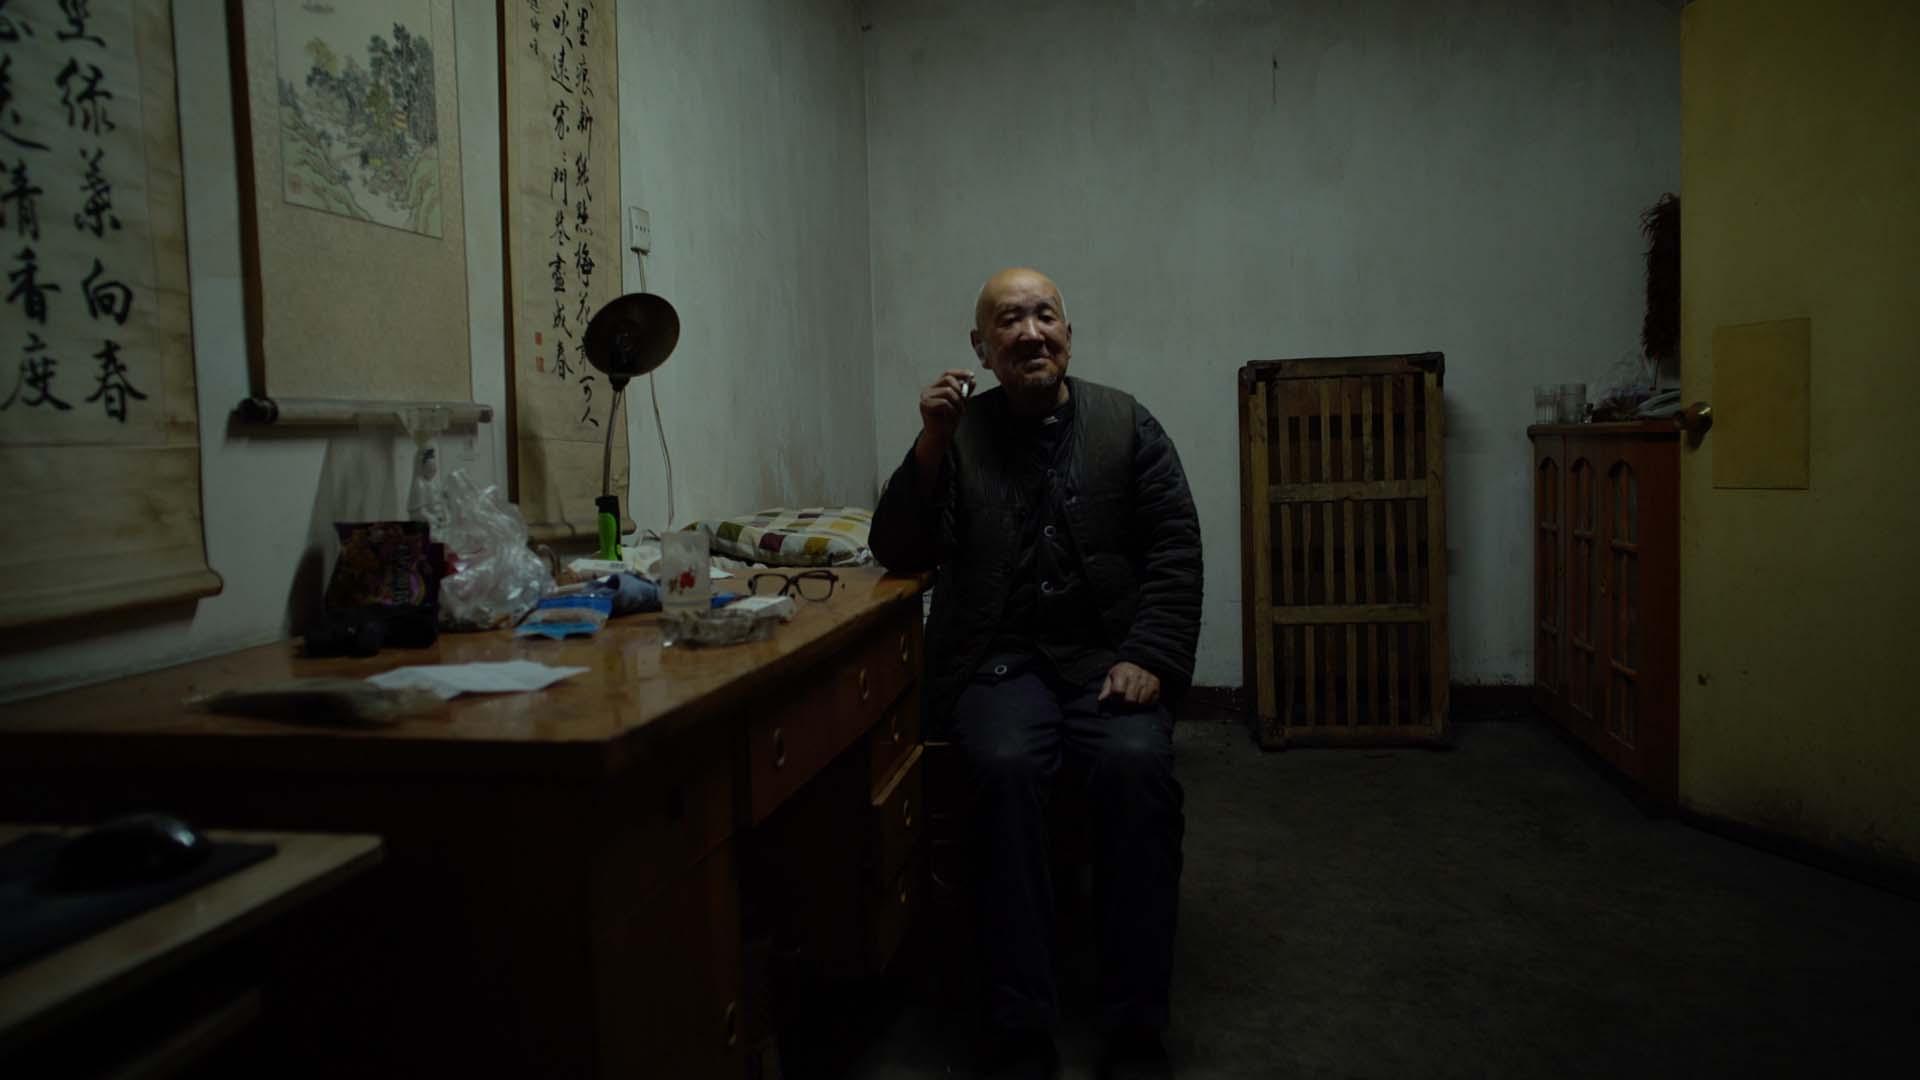 پیرمردی در فیلم Dead Souls در اتاقی نسبتا تاریک نشسته است